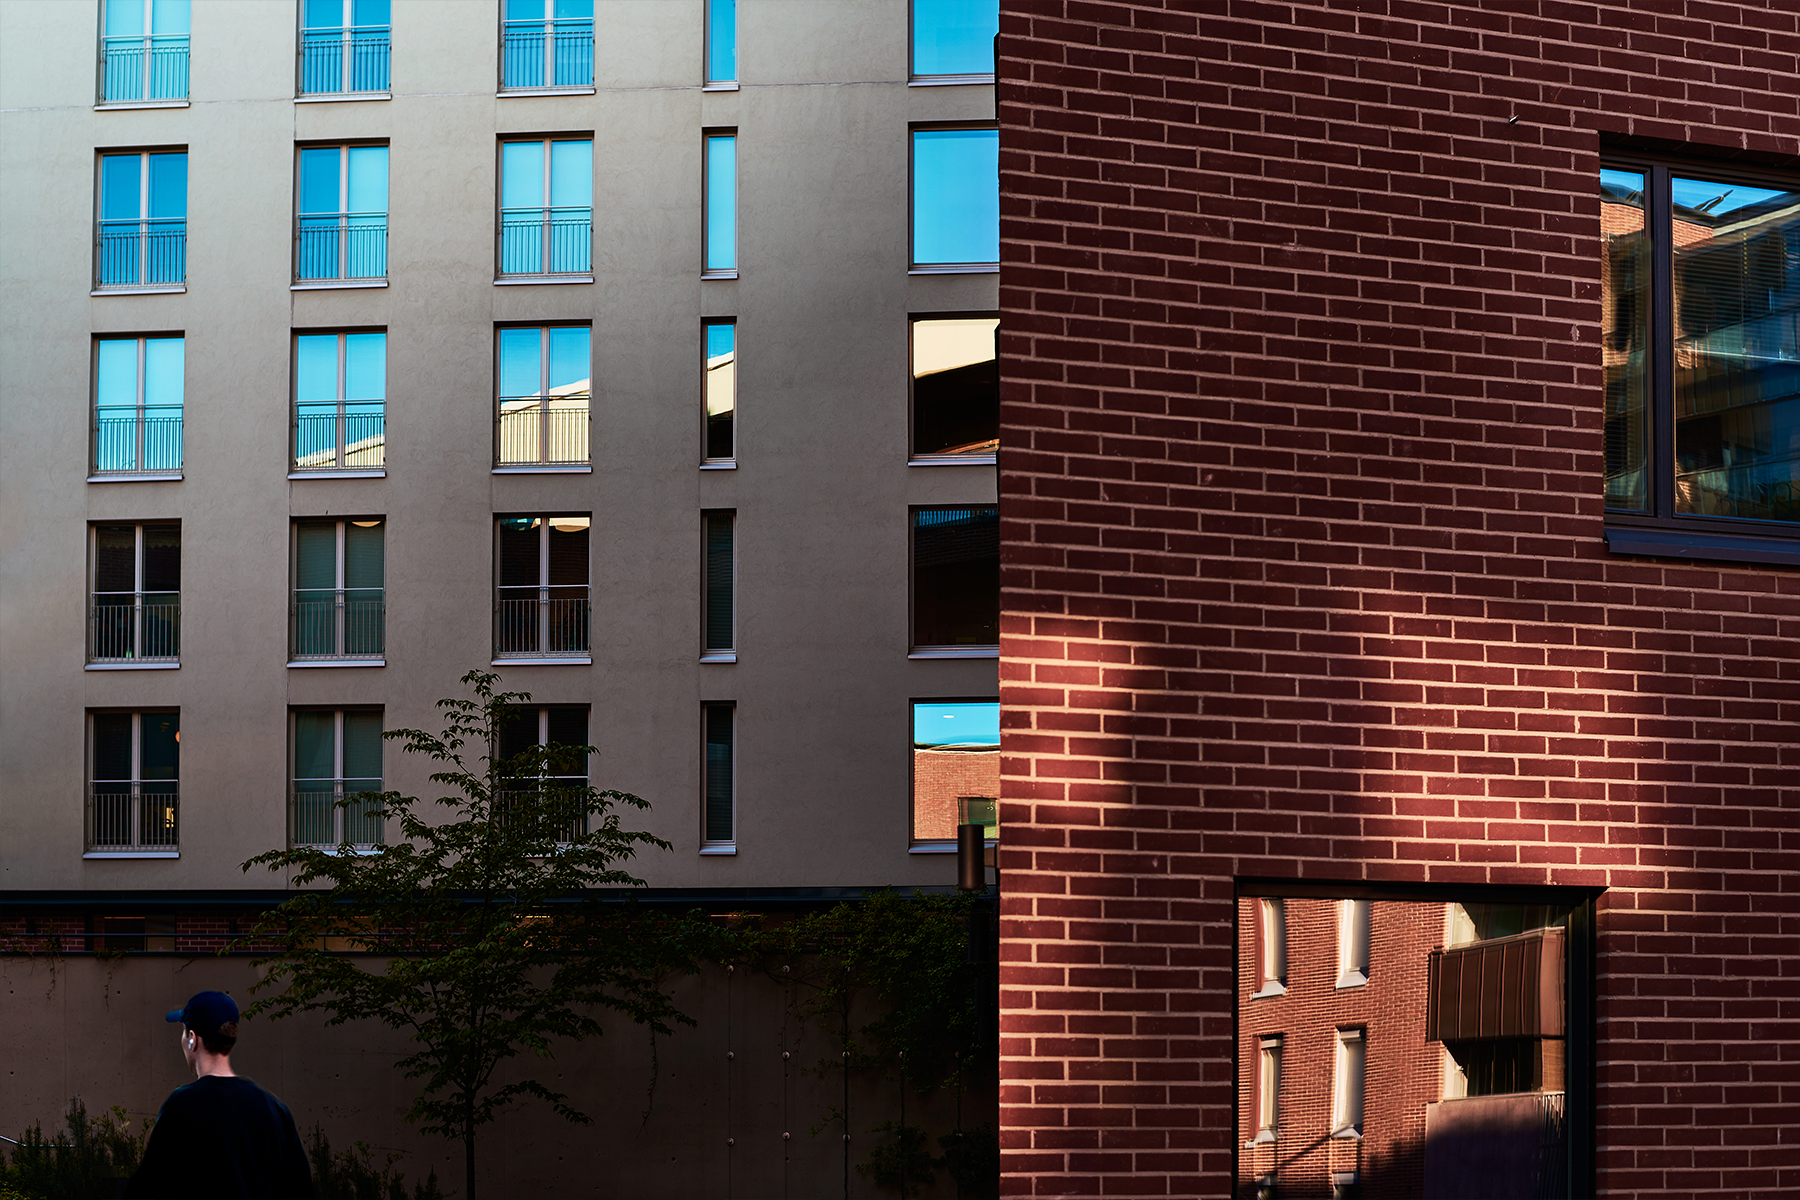  Illustration - två hus och solljus återspeglar från fönstrar.